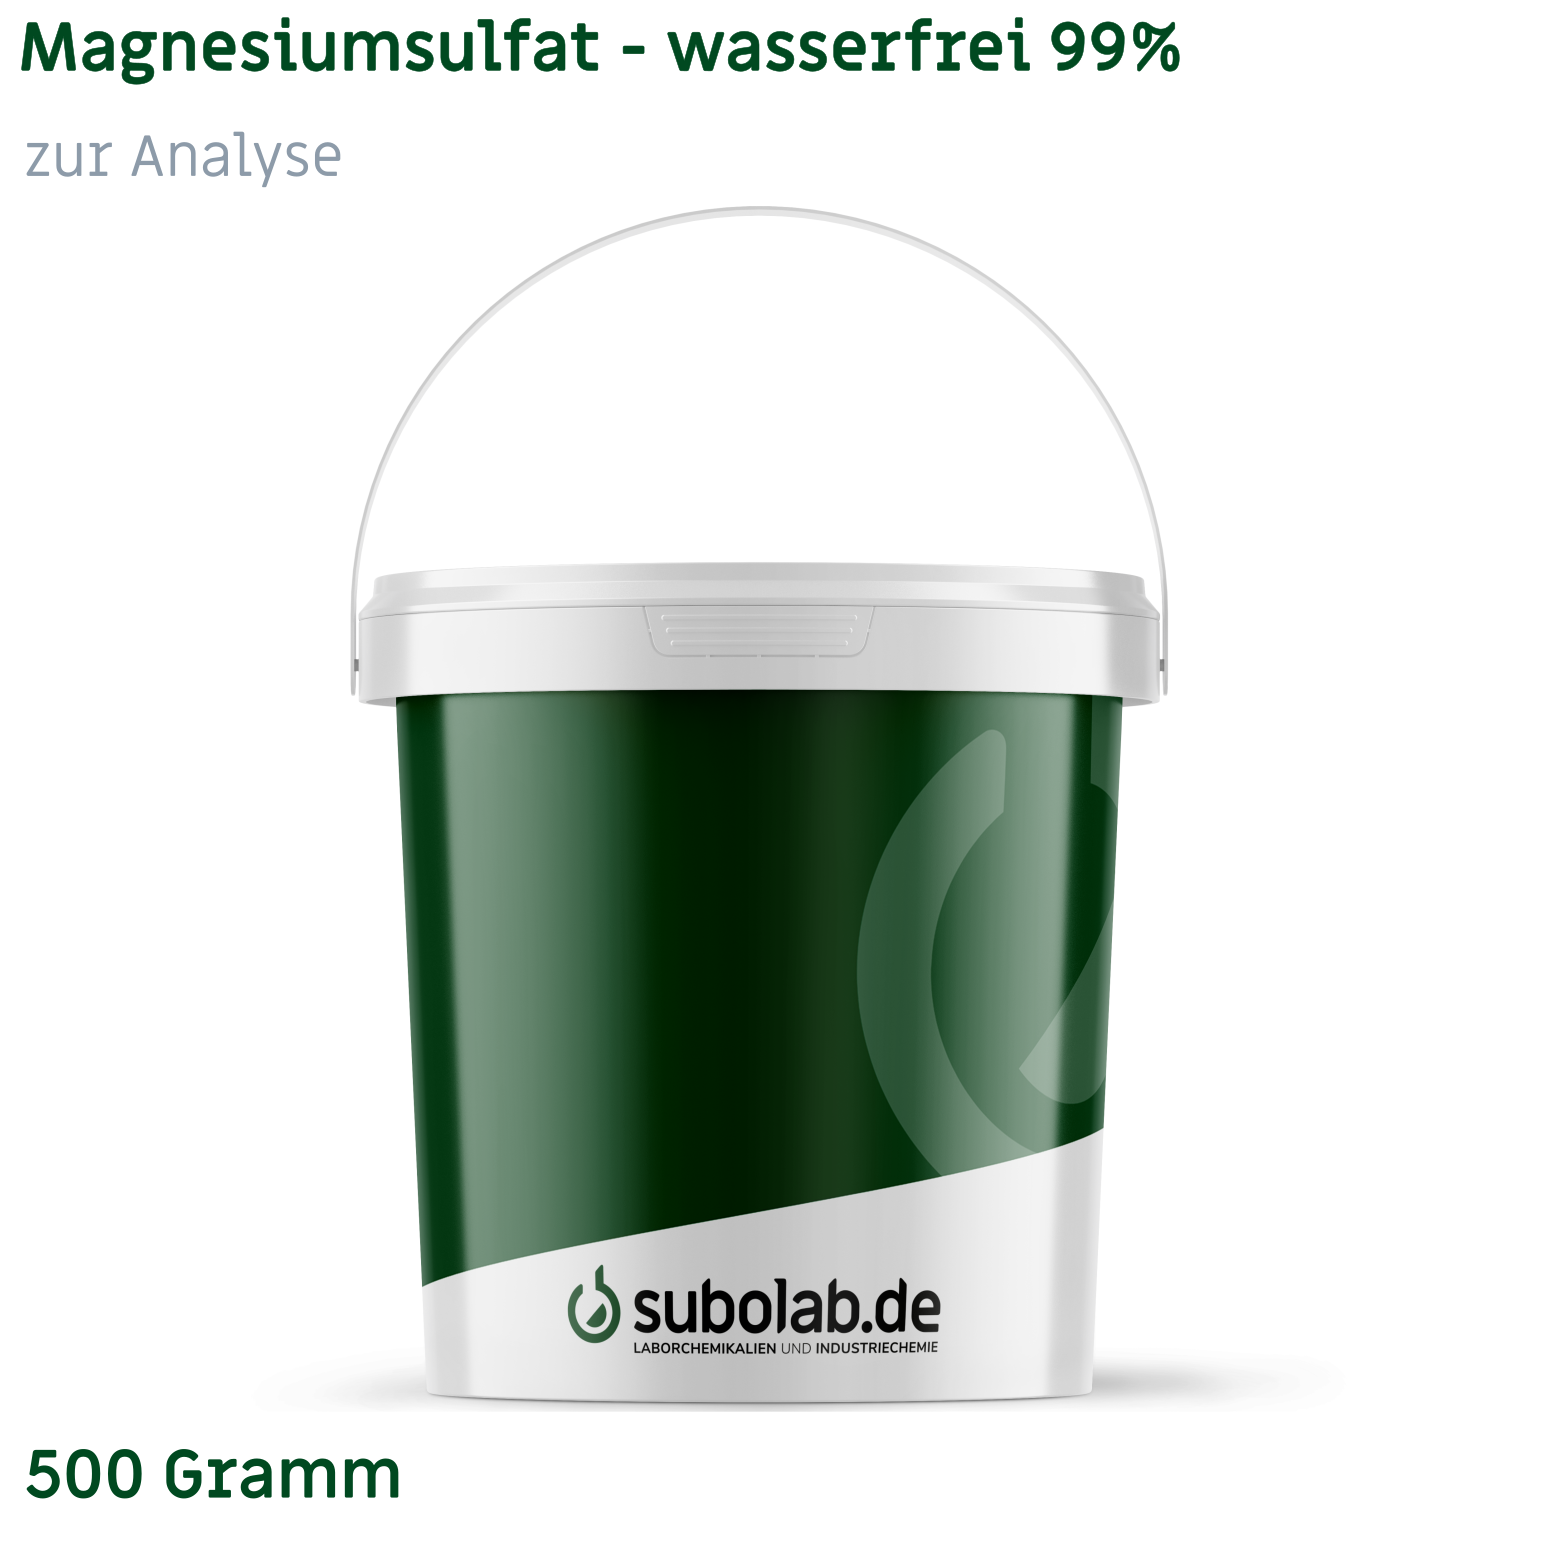 Bild von Magnesiumsulfat - wasserfrei 99% zur Analyse (500 Gramm)